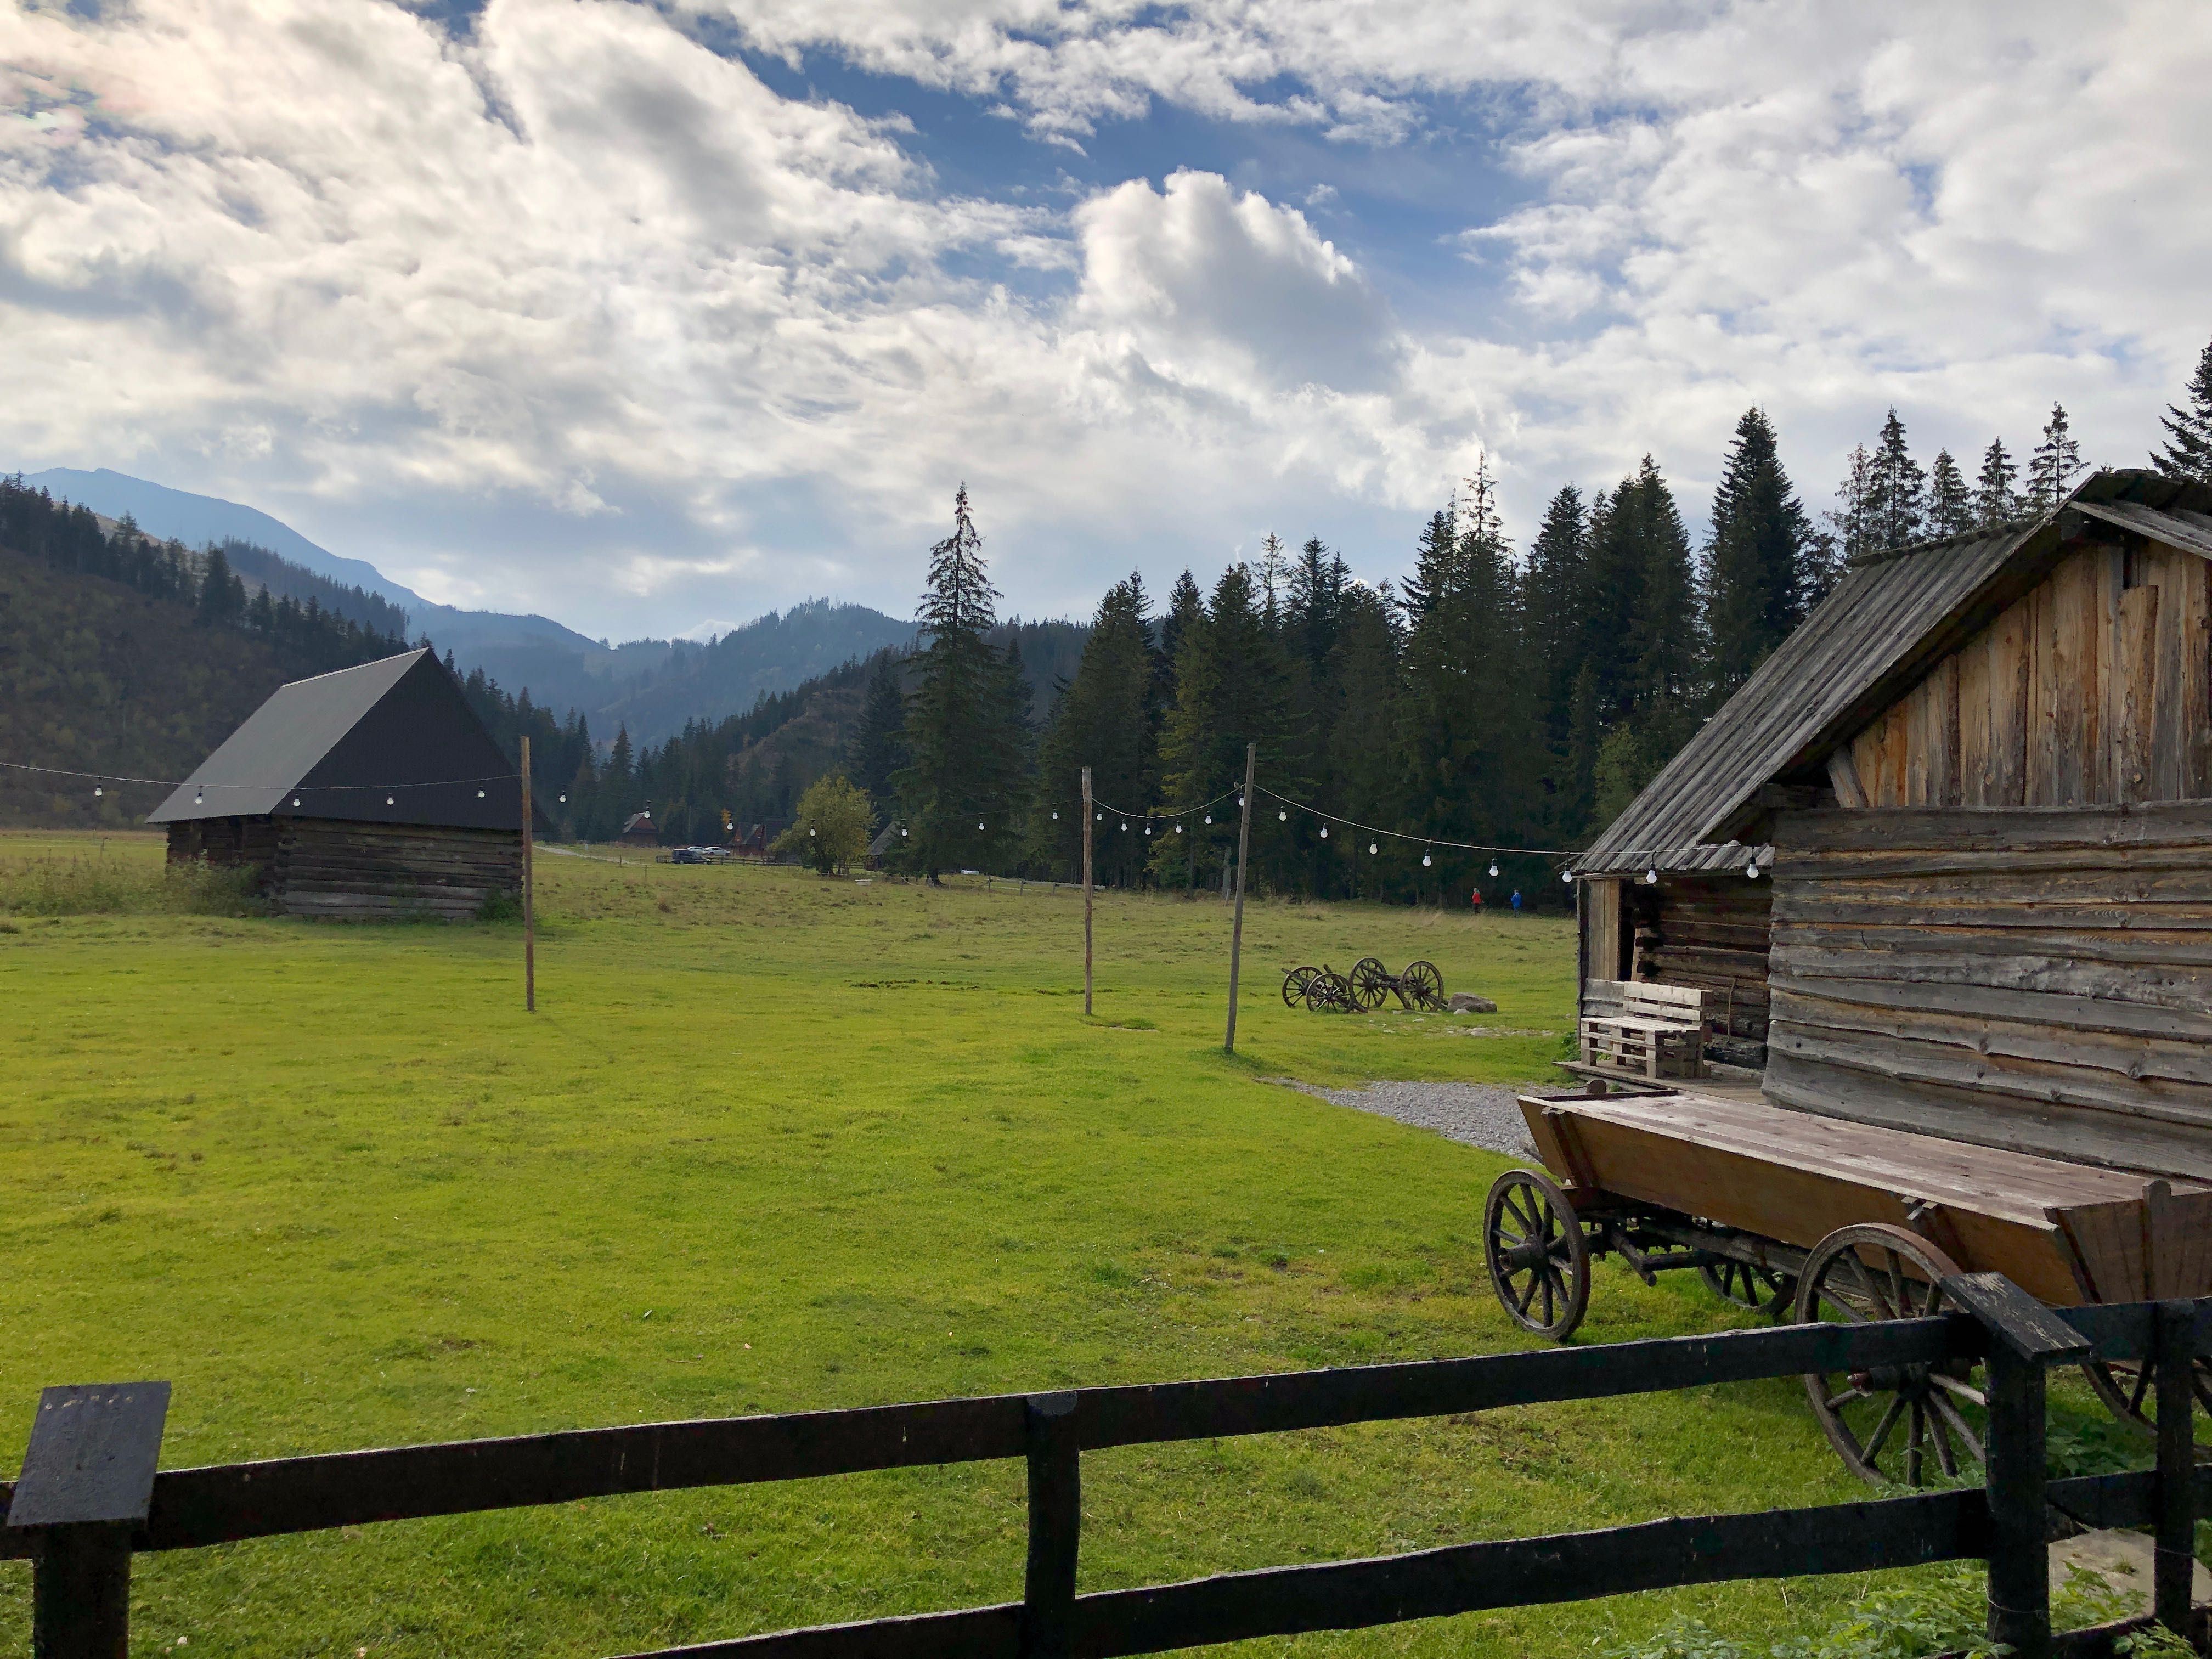 Noclegi w Tatrach, chata na polanie, domek na wyłączność